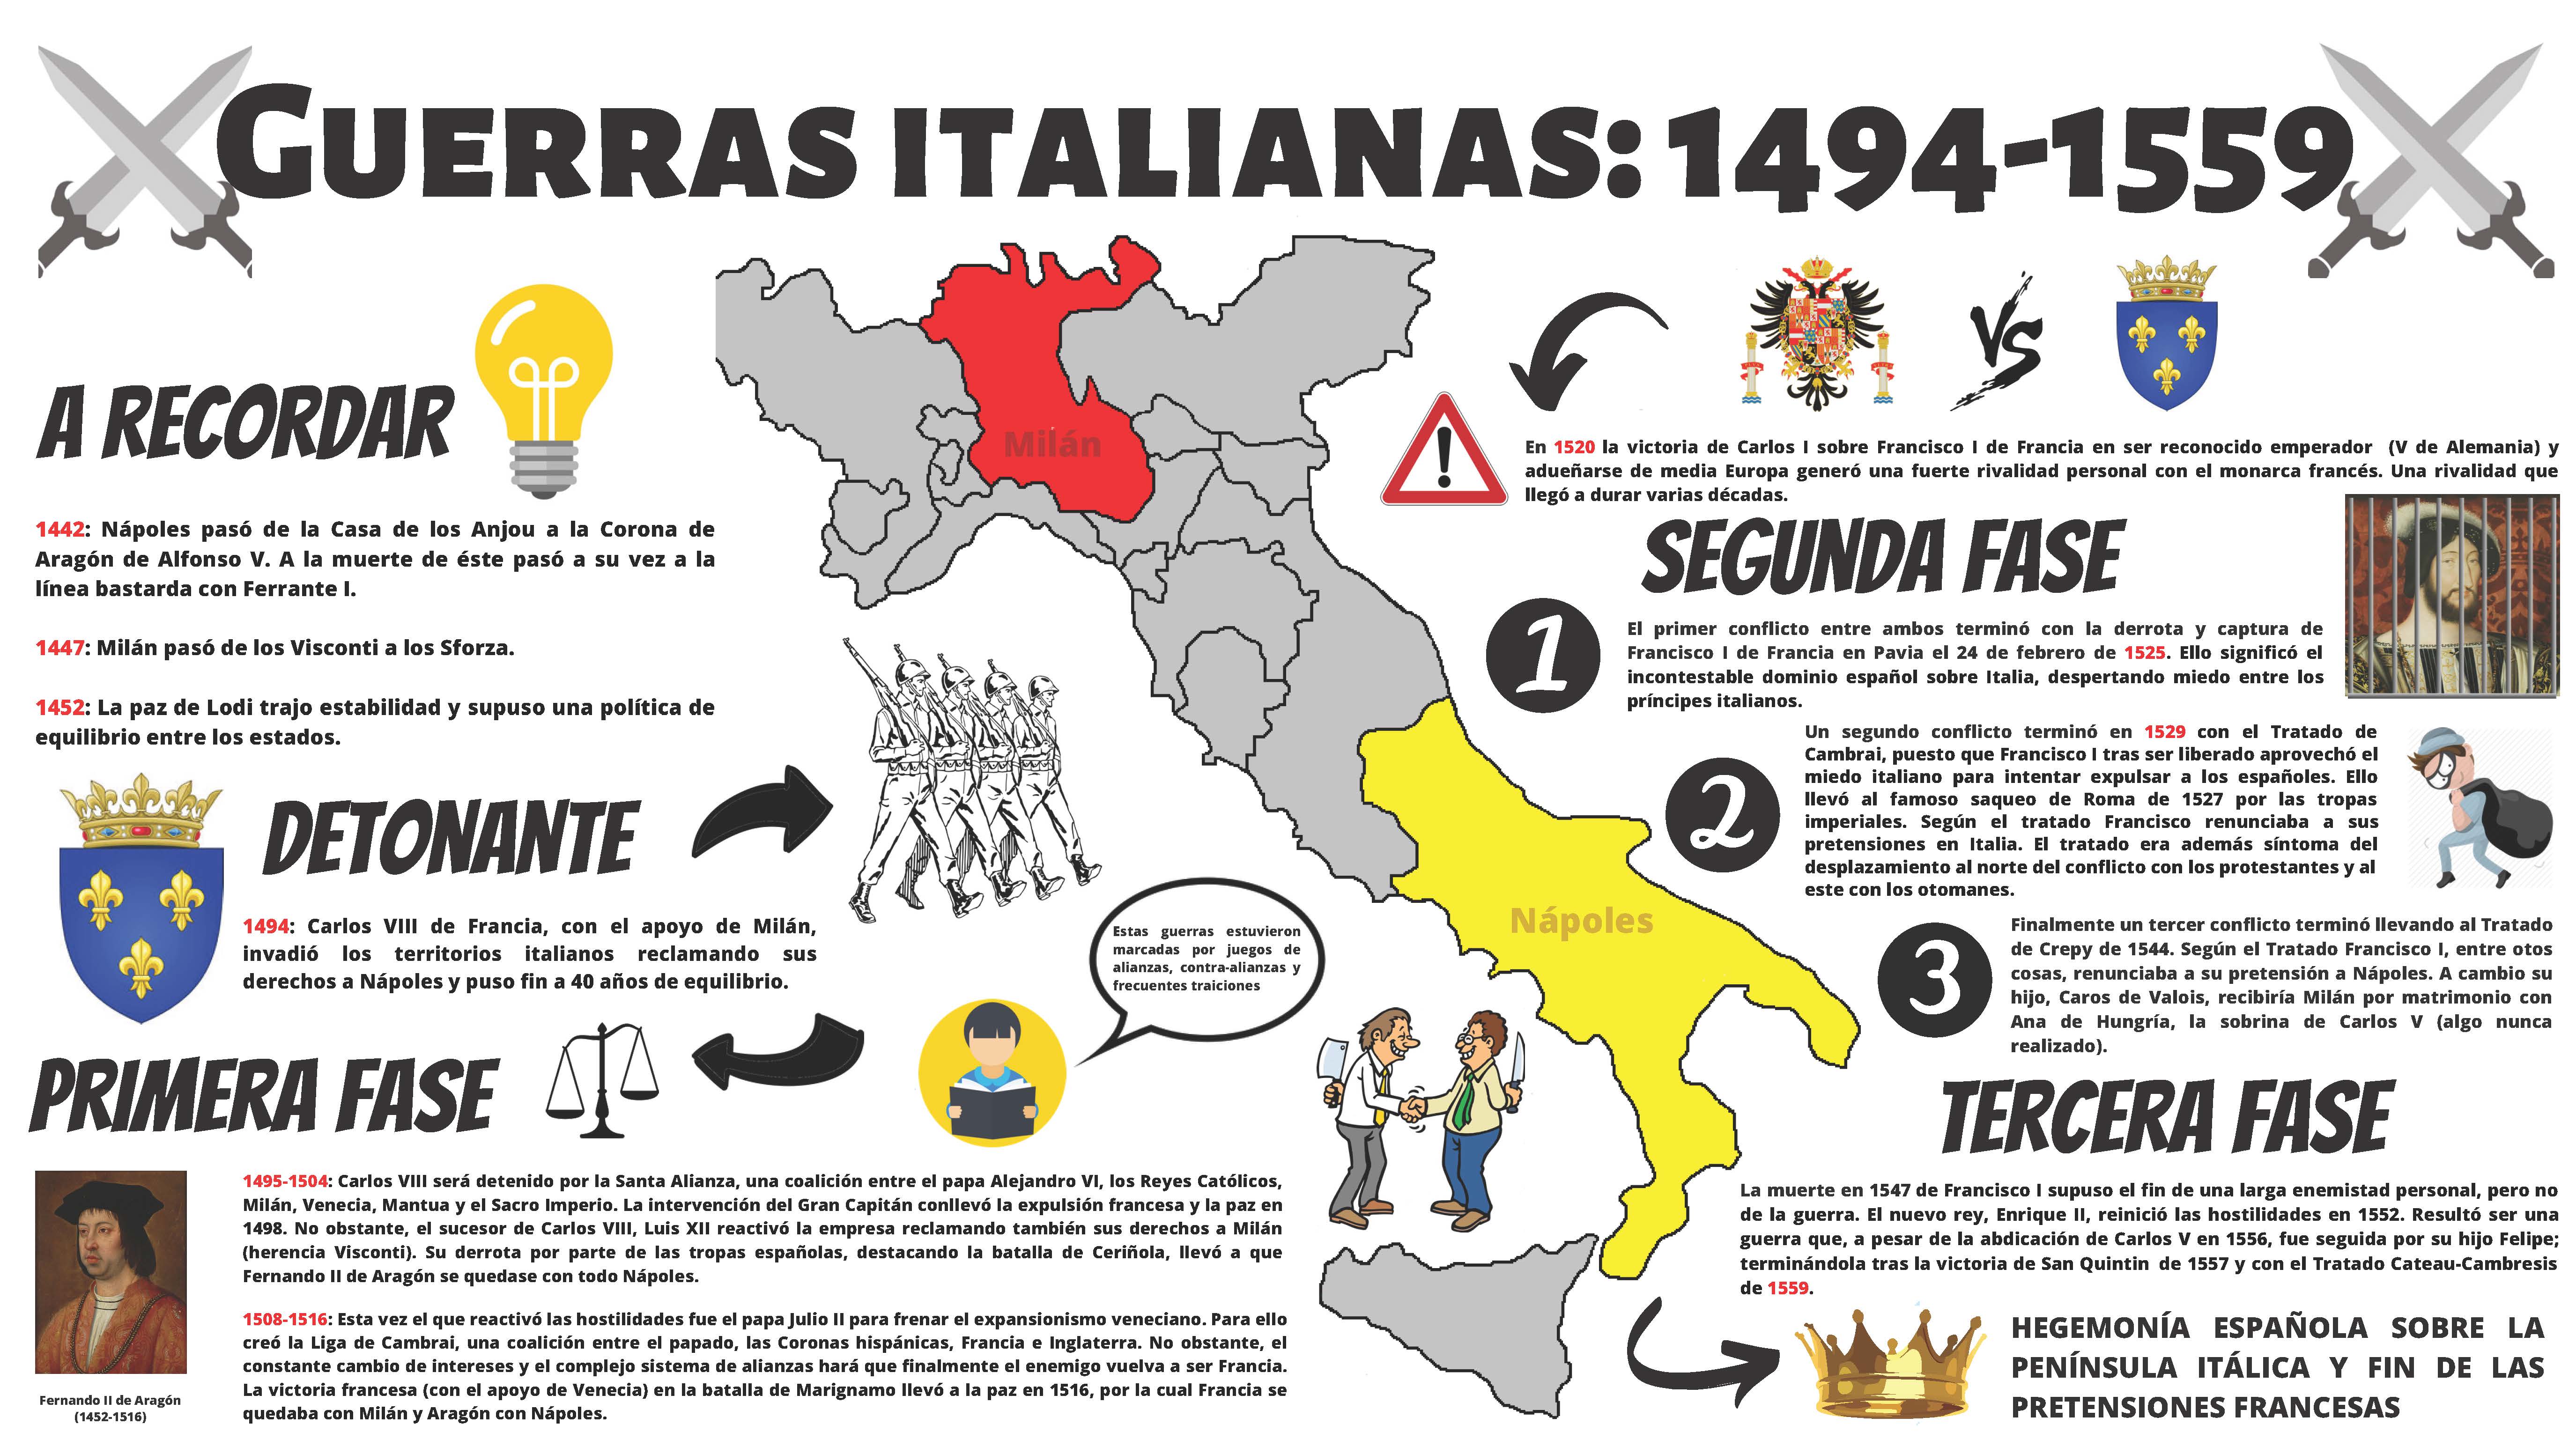 Guerras italianas: 1494-1559